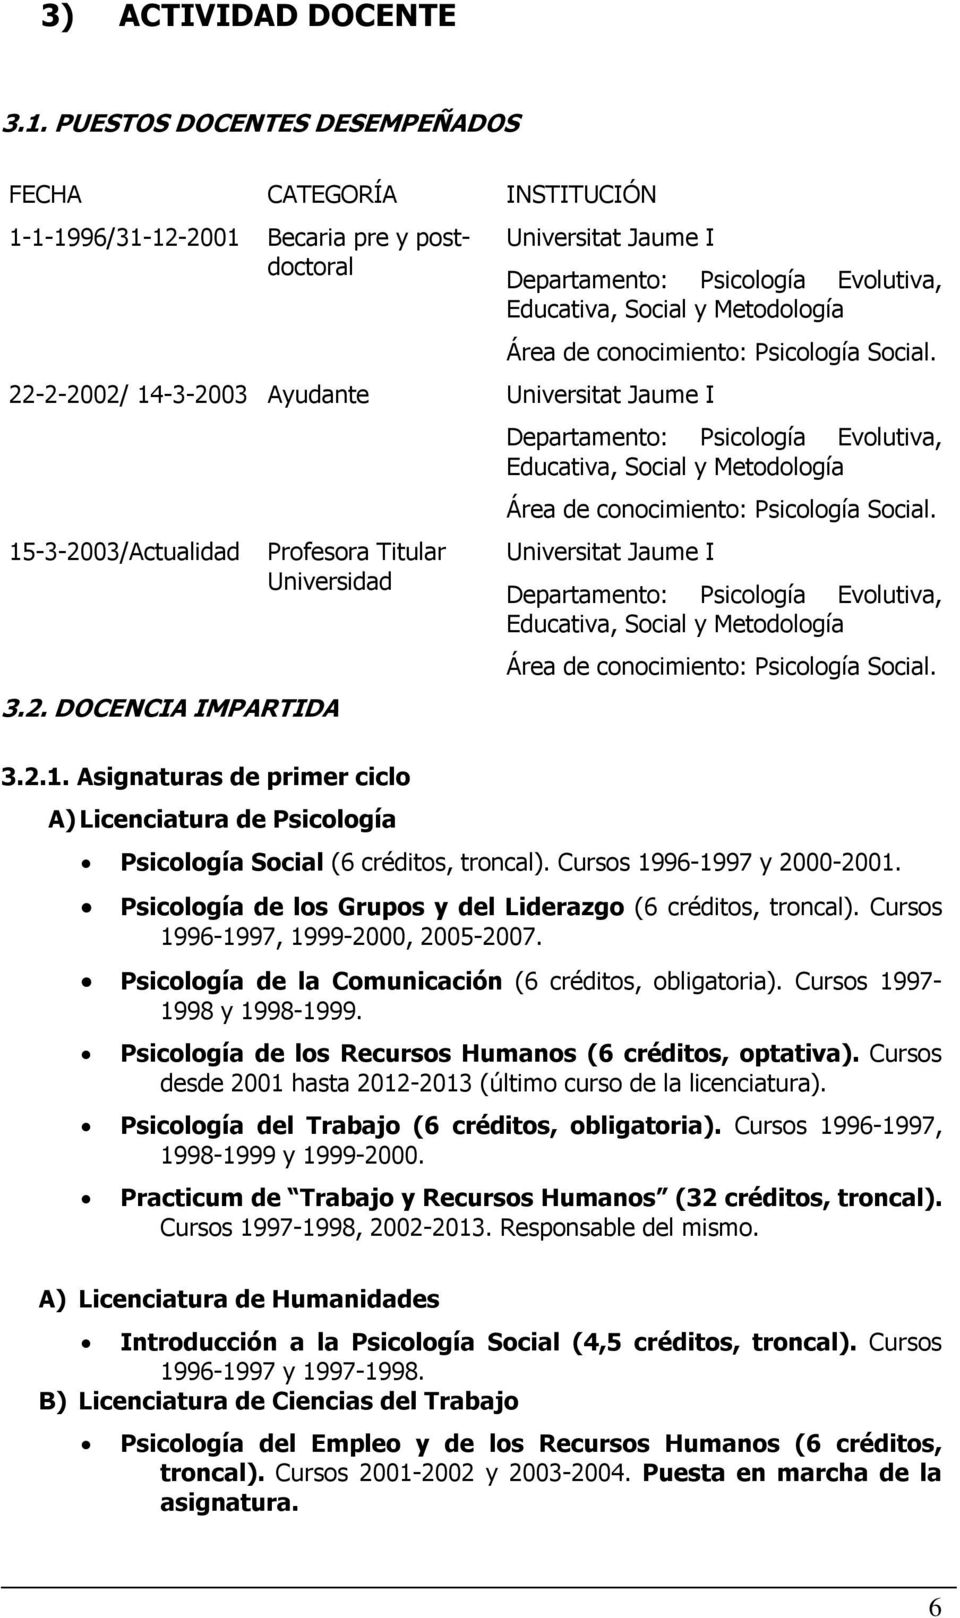 2.1. Asignaturas de primer ciclo A) Licenciatura de Psicología Departamento: Psicología Evolutiva, Educativa, Social y Metodología Área de conocimiento: Psicología Social.